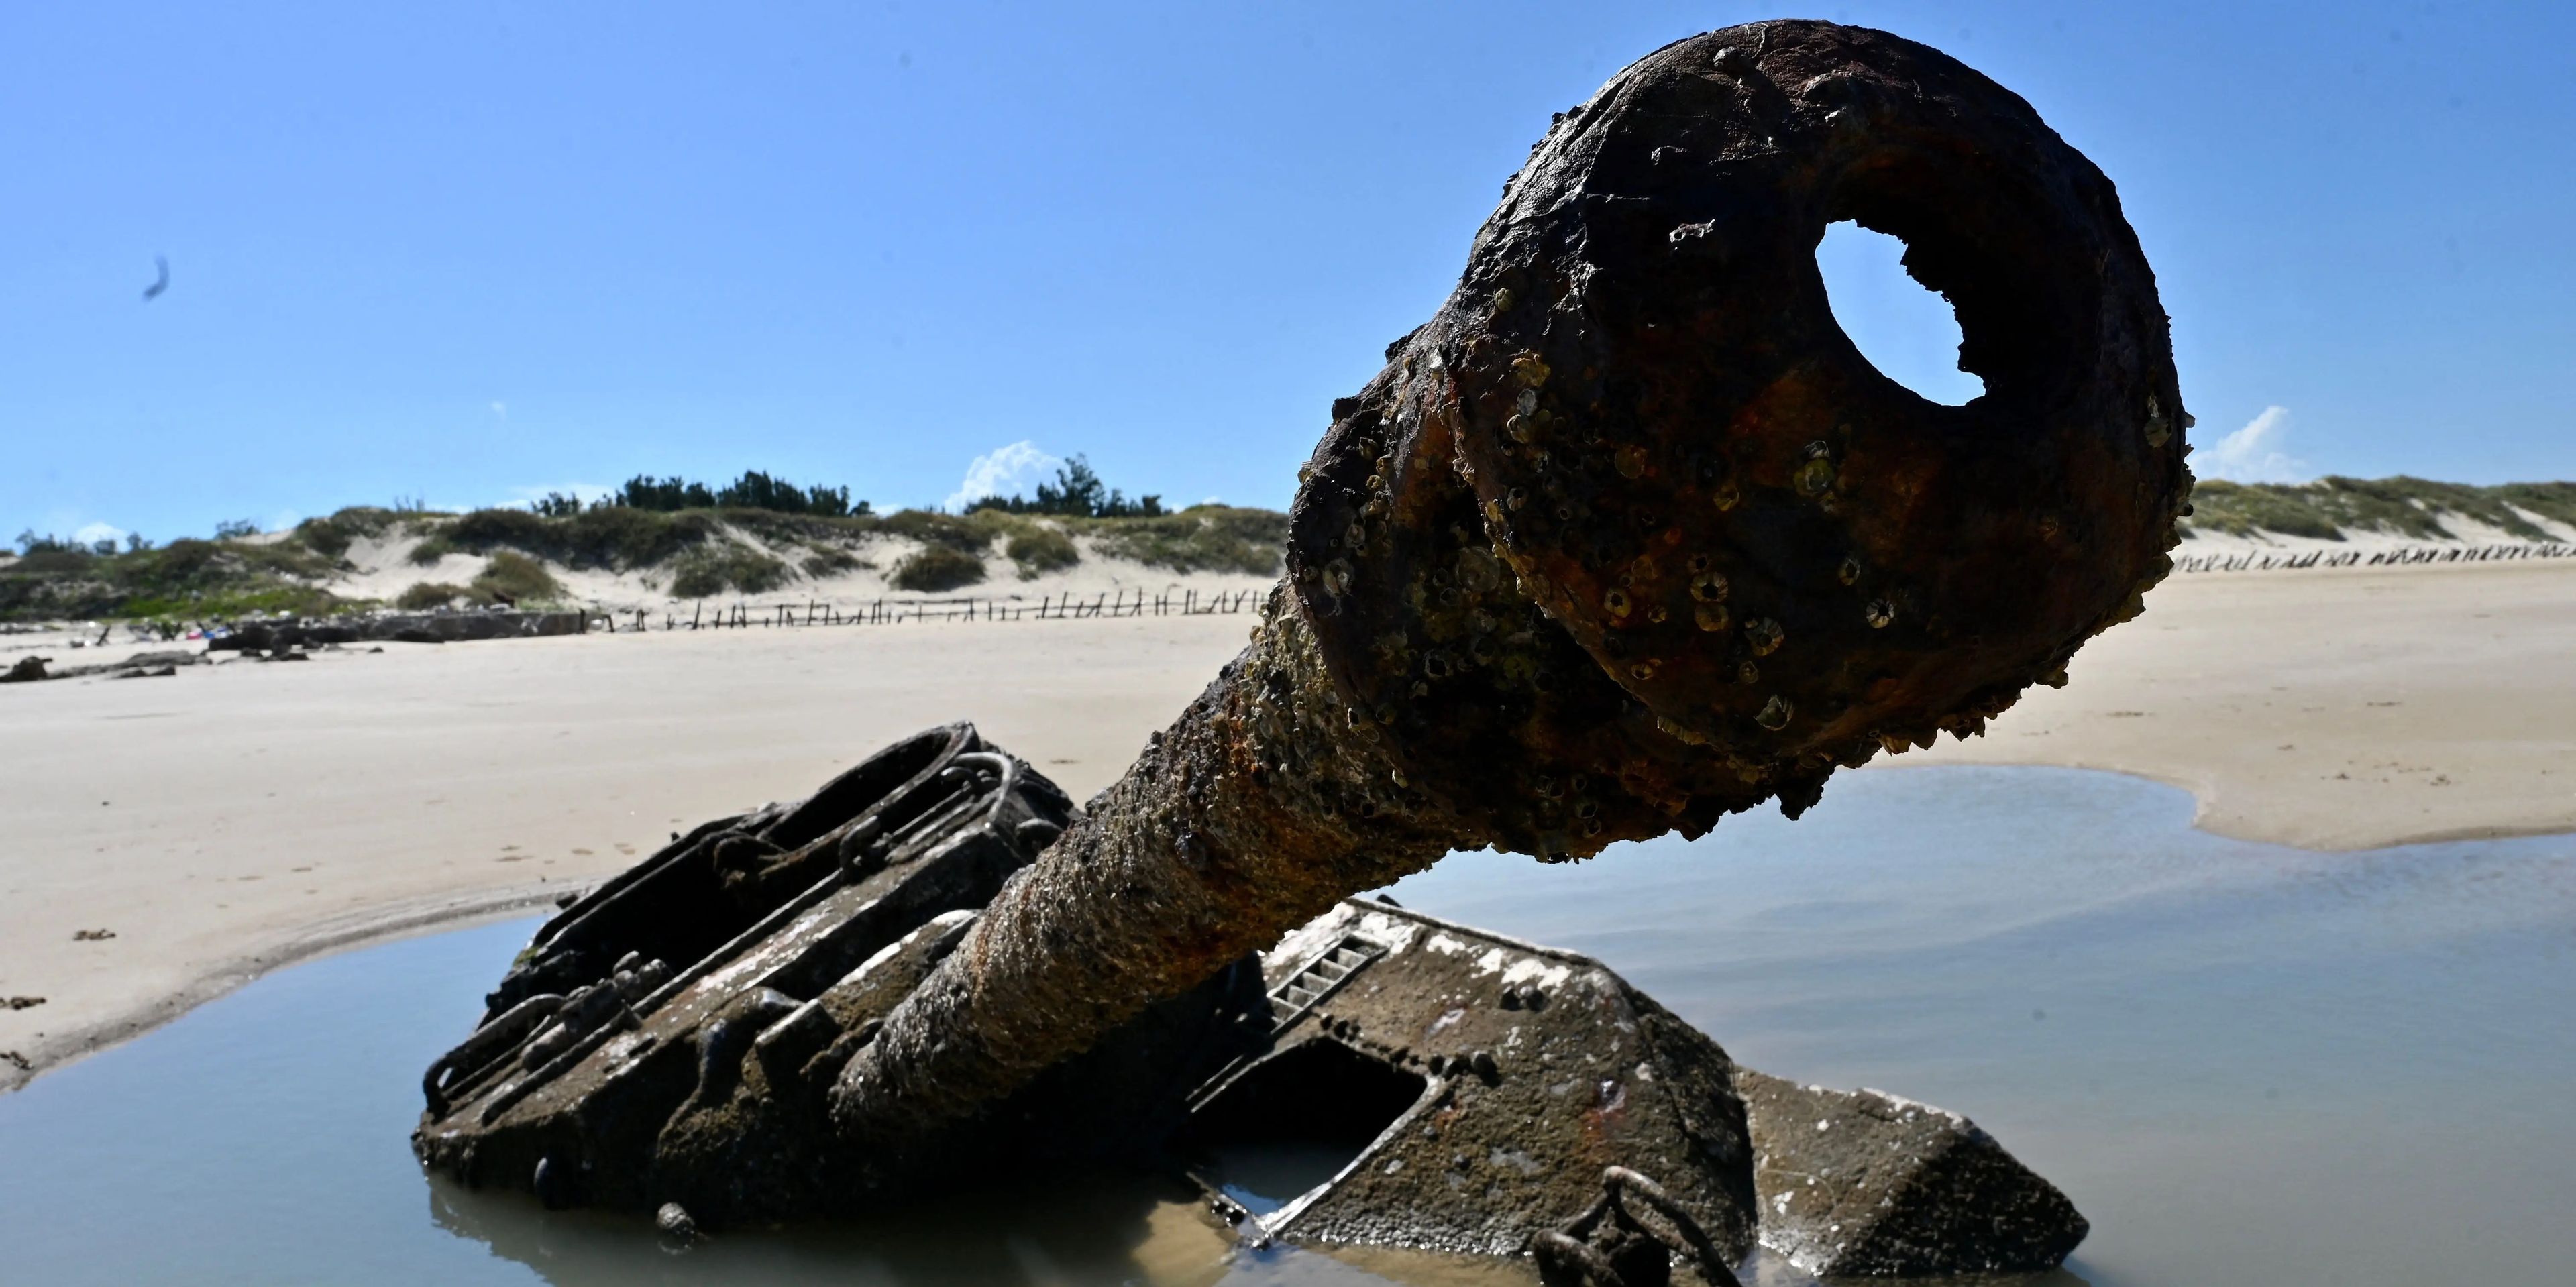 Los restos oxidados de un viejo tanque en la playa de arena de Ou Cuo, en las islas Kinmen de Taiwán, situadas a solo 3,2 km de la costa de China continental, el 11 de agosto de 2022.